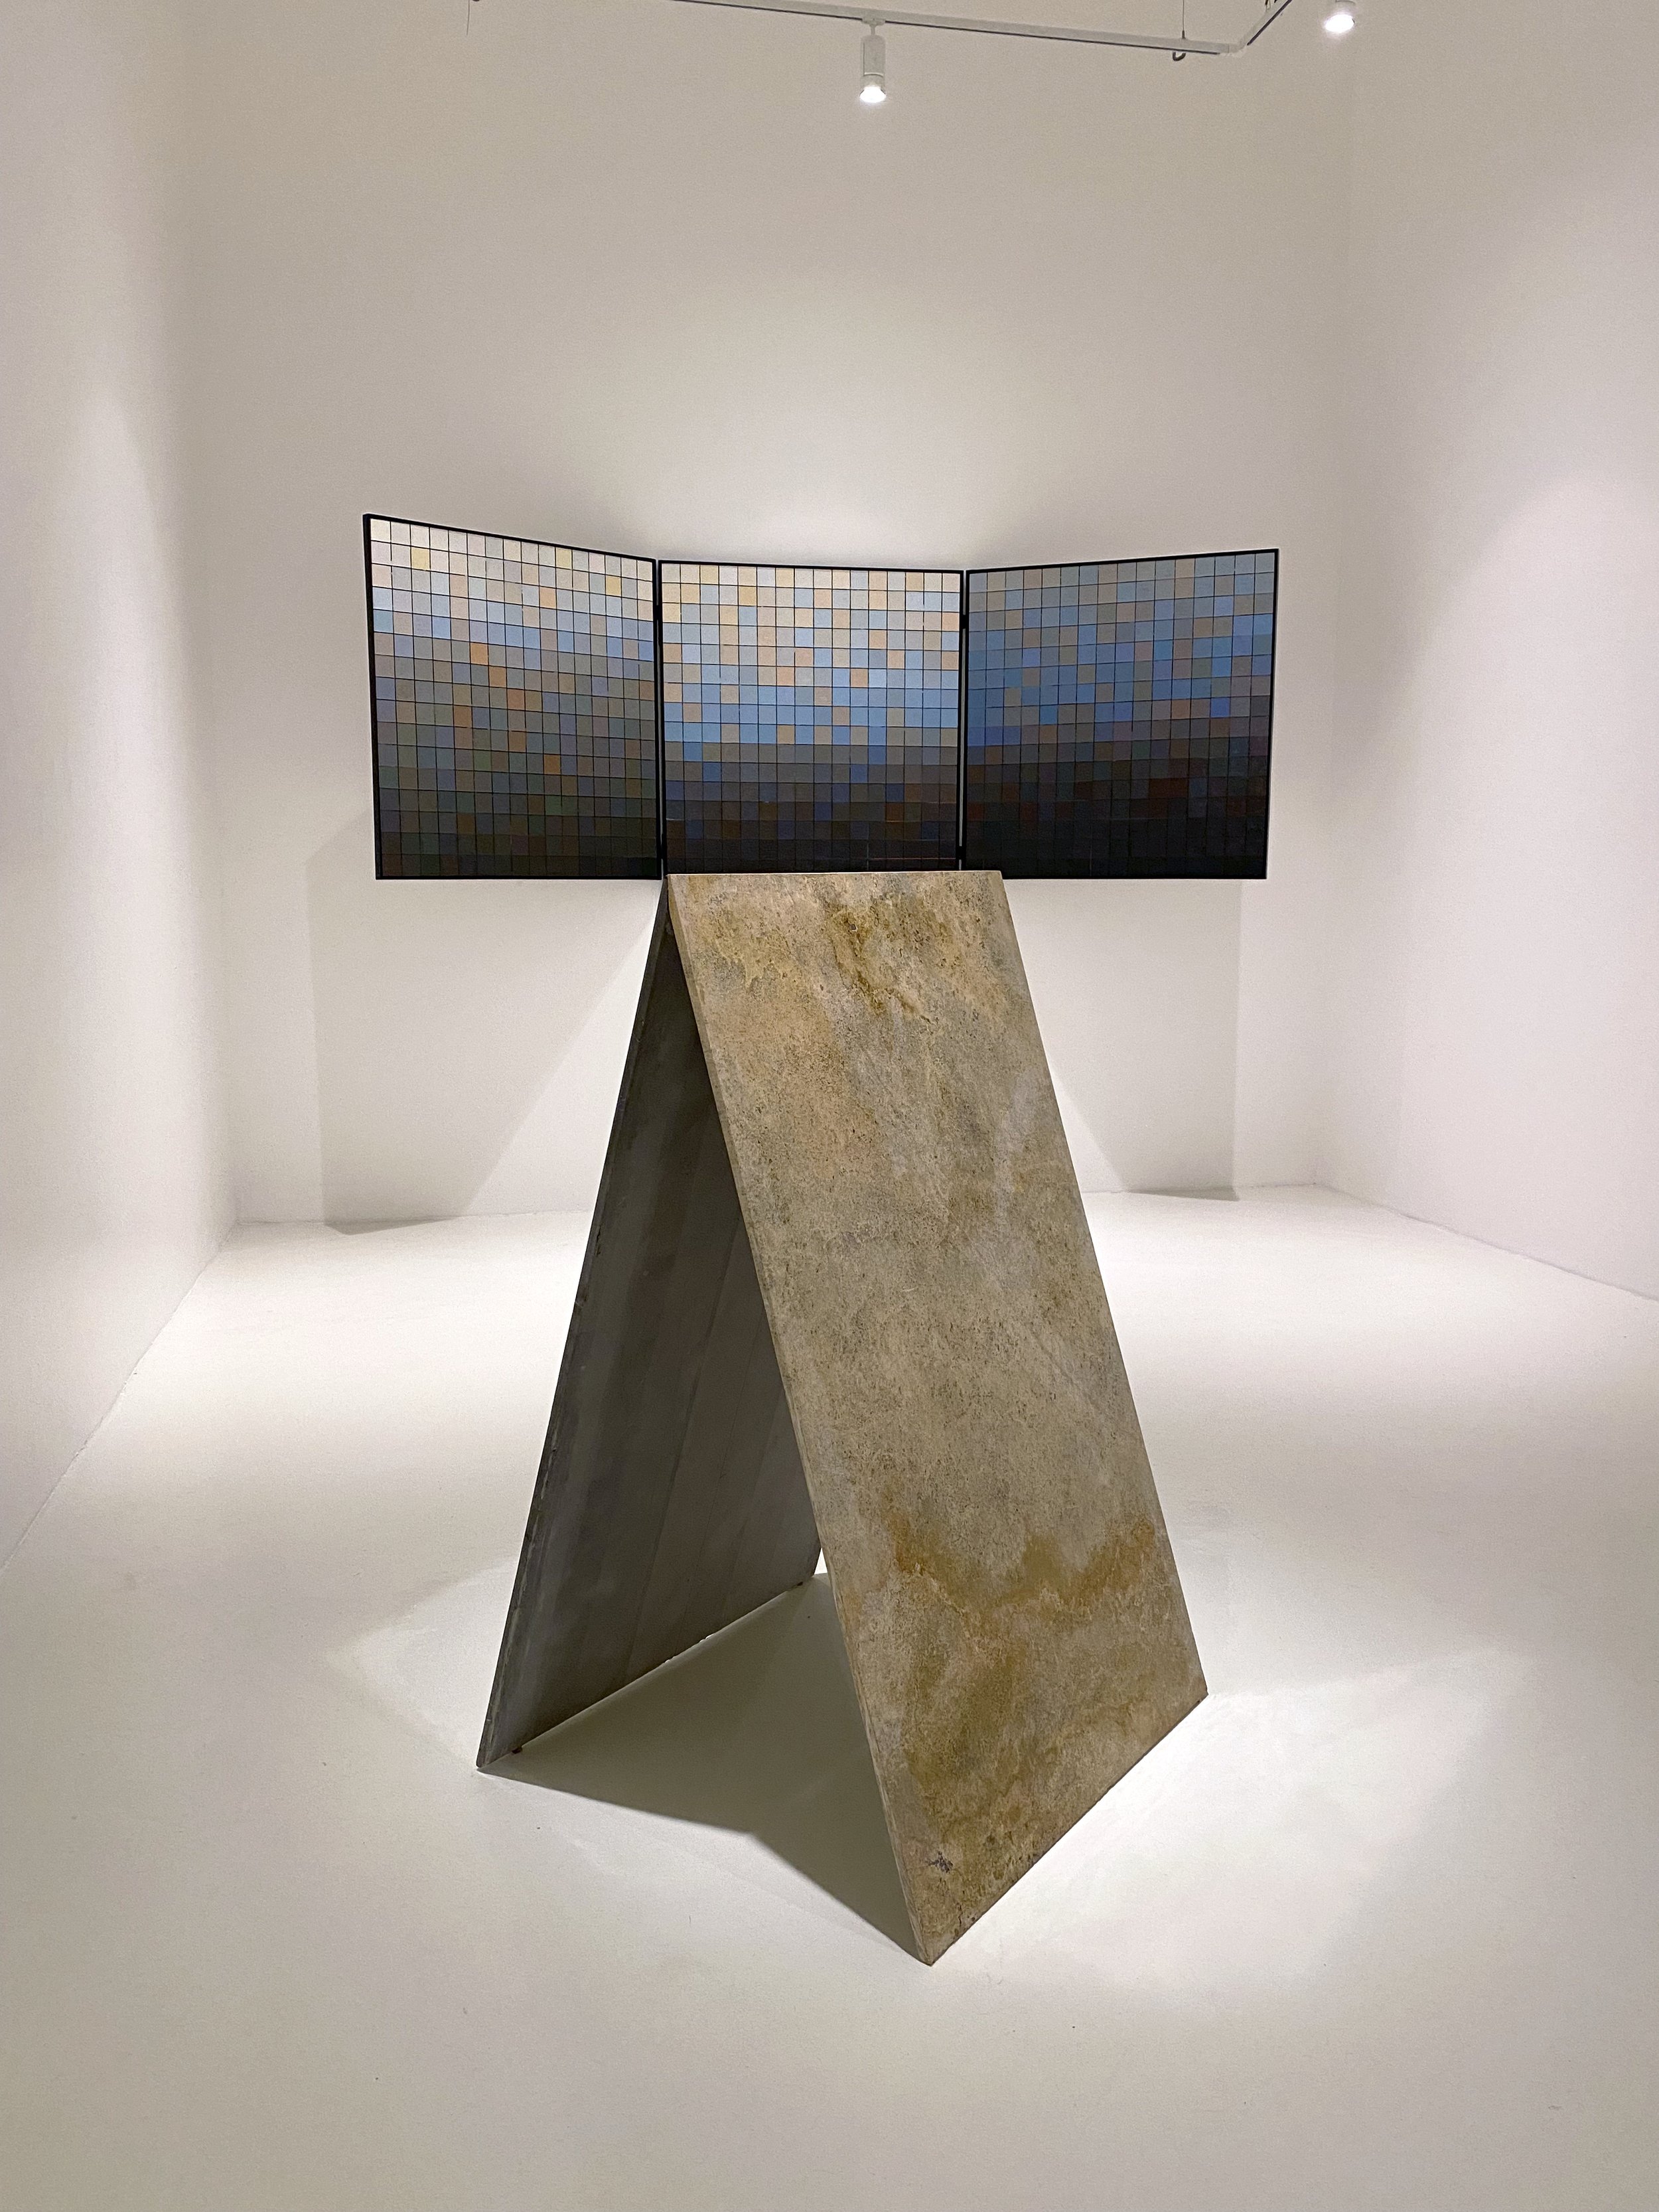   Stijn Cole , vista de instalación de “Horizontes”, Galería Hilario Galguera, Ciudad de México, agosto de 2022. Foto por La Consultoría. 